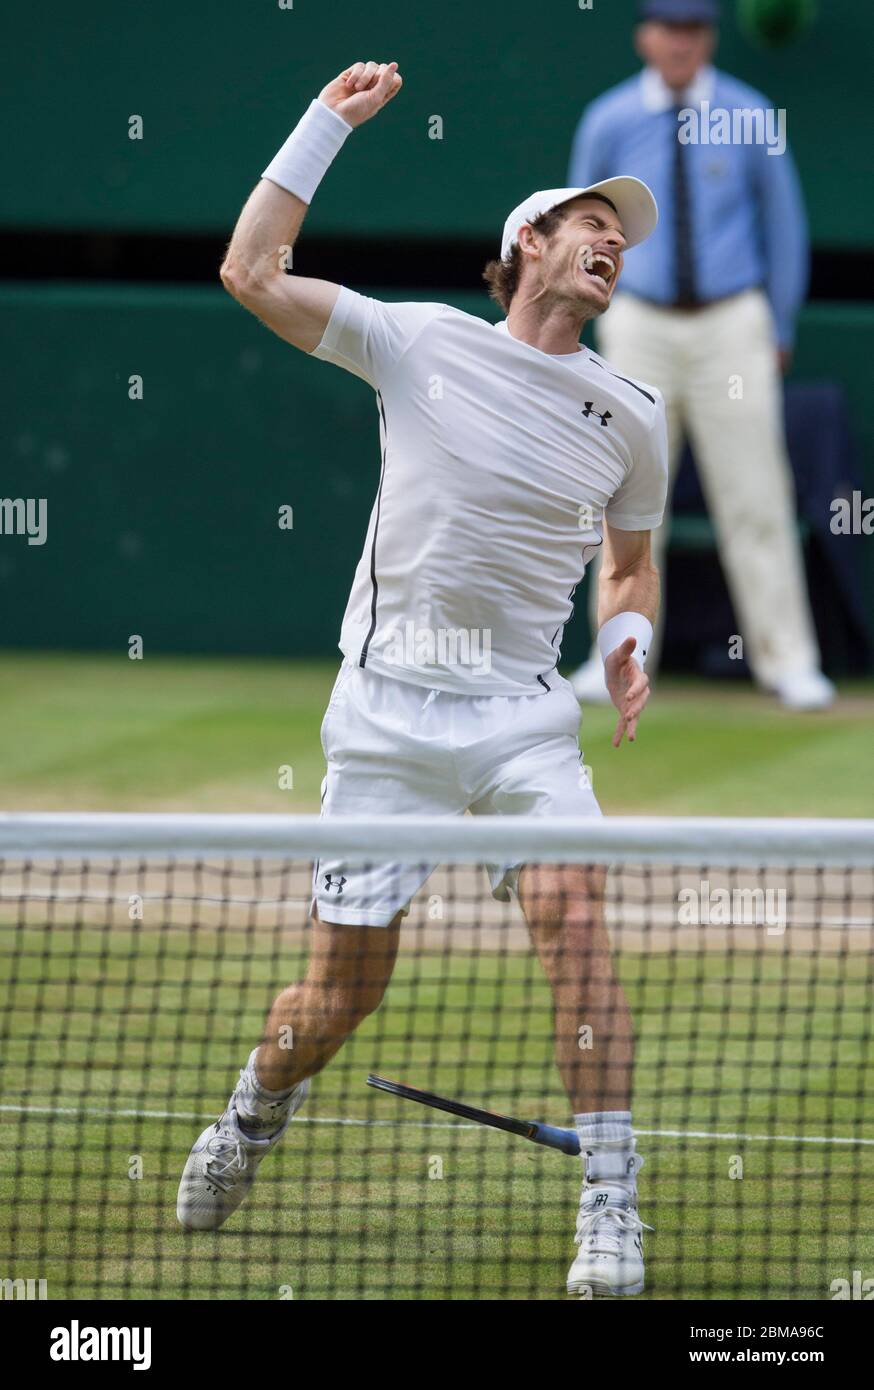 10 juillet 2016, Center court, Wimbledon: Mens Singles final, Andy Murray célèbre après avoir battu Milos Raonic pour gagner Wimbledon pour la deuxième fois. Banque D'Images